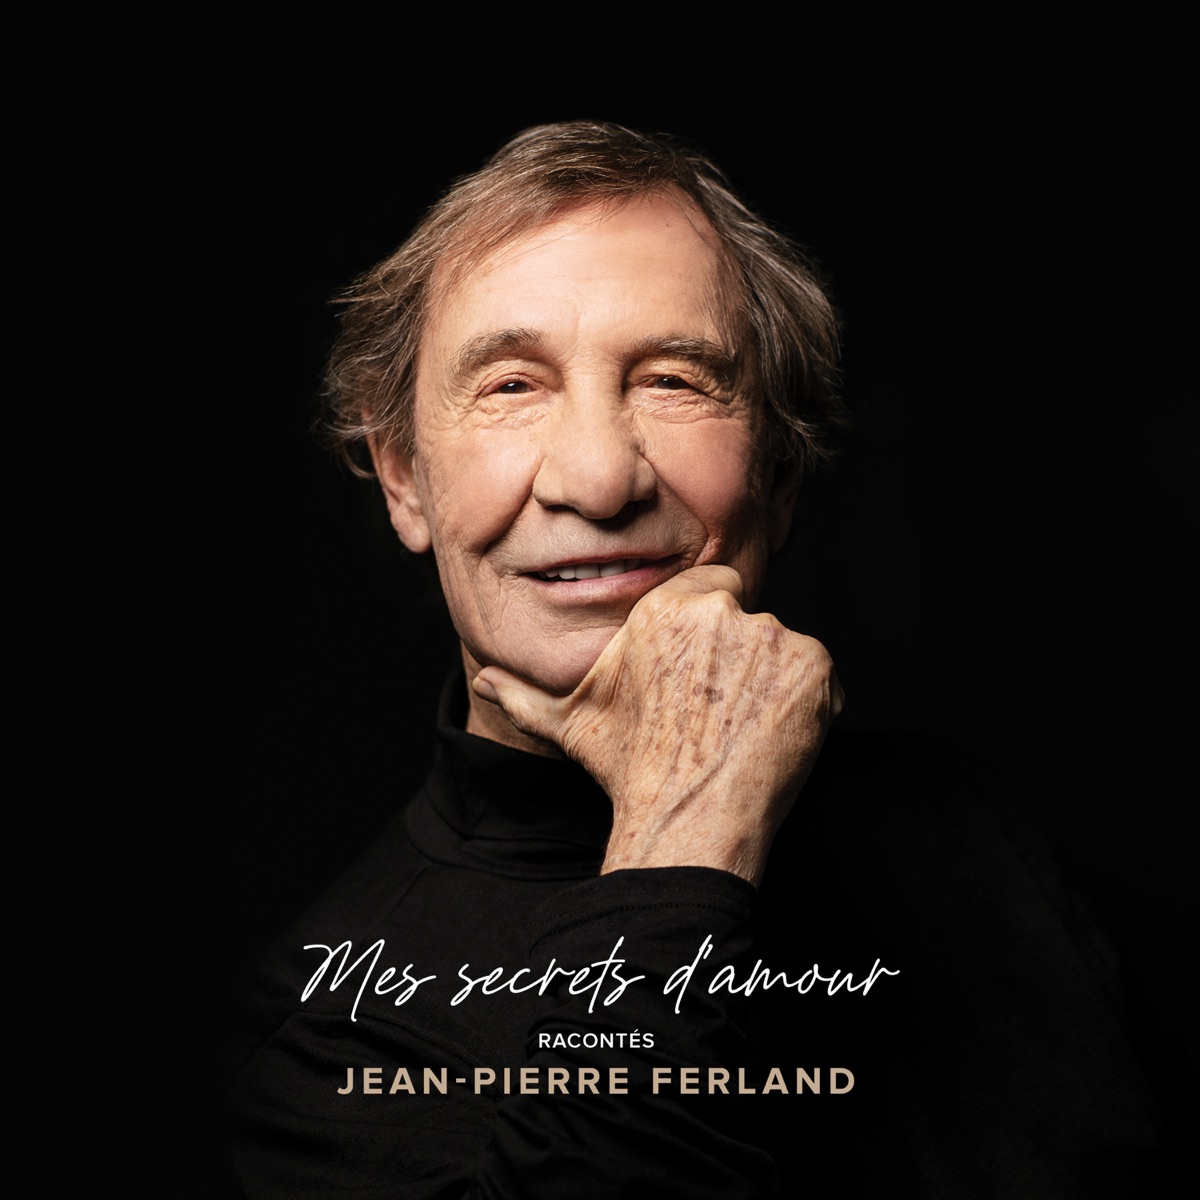 Écoute pas ça by Jean-Pierre Ferland on Apple Music